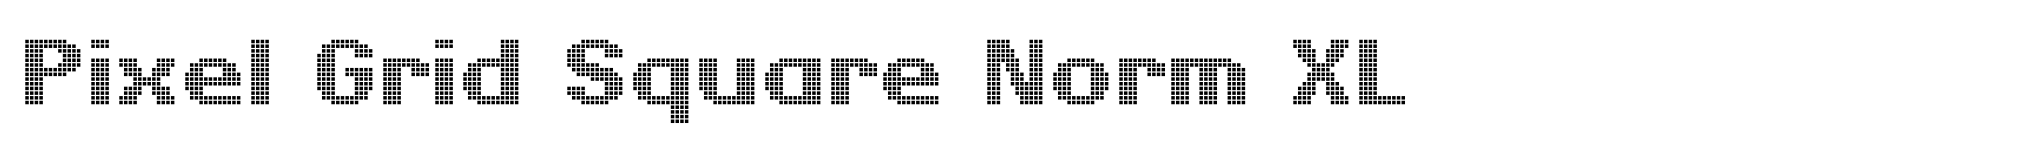 Pixel Grid Square Norm XL image